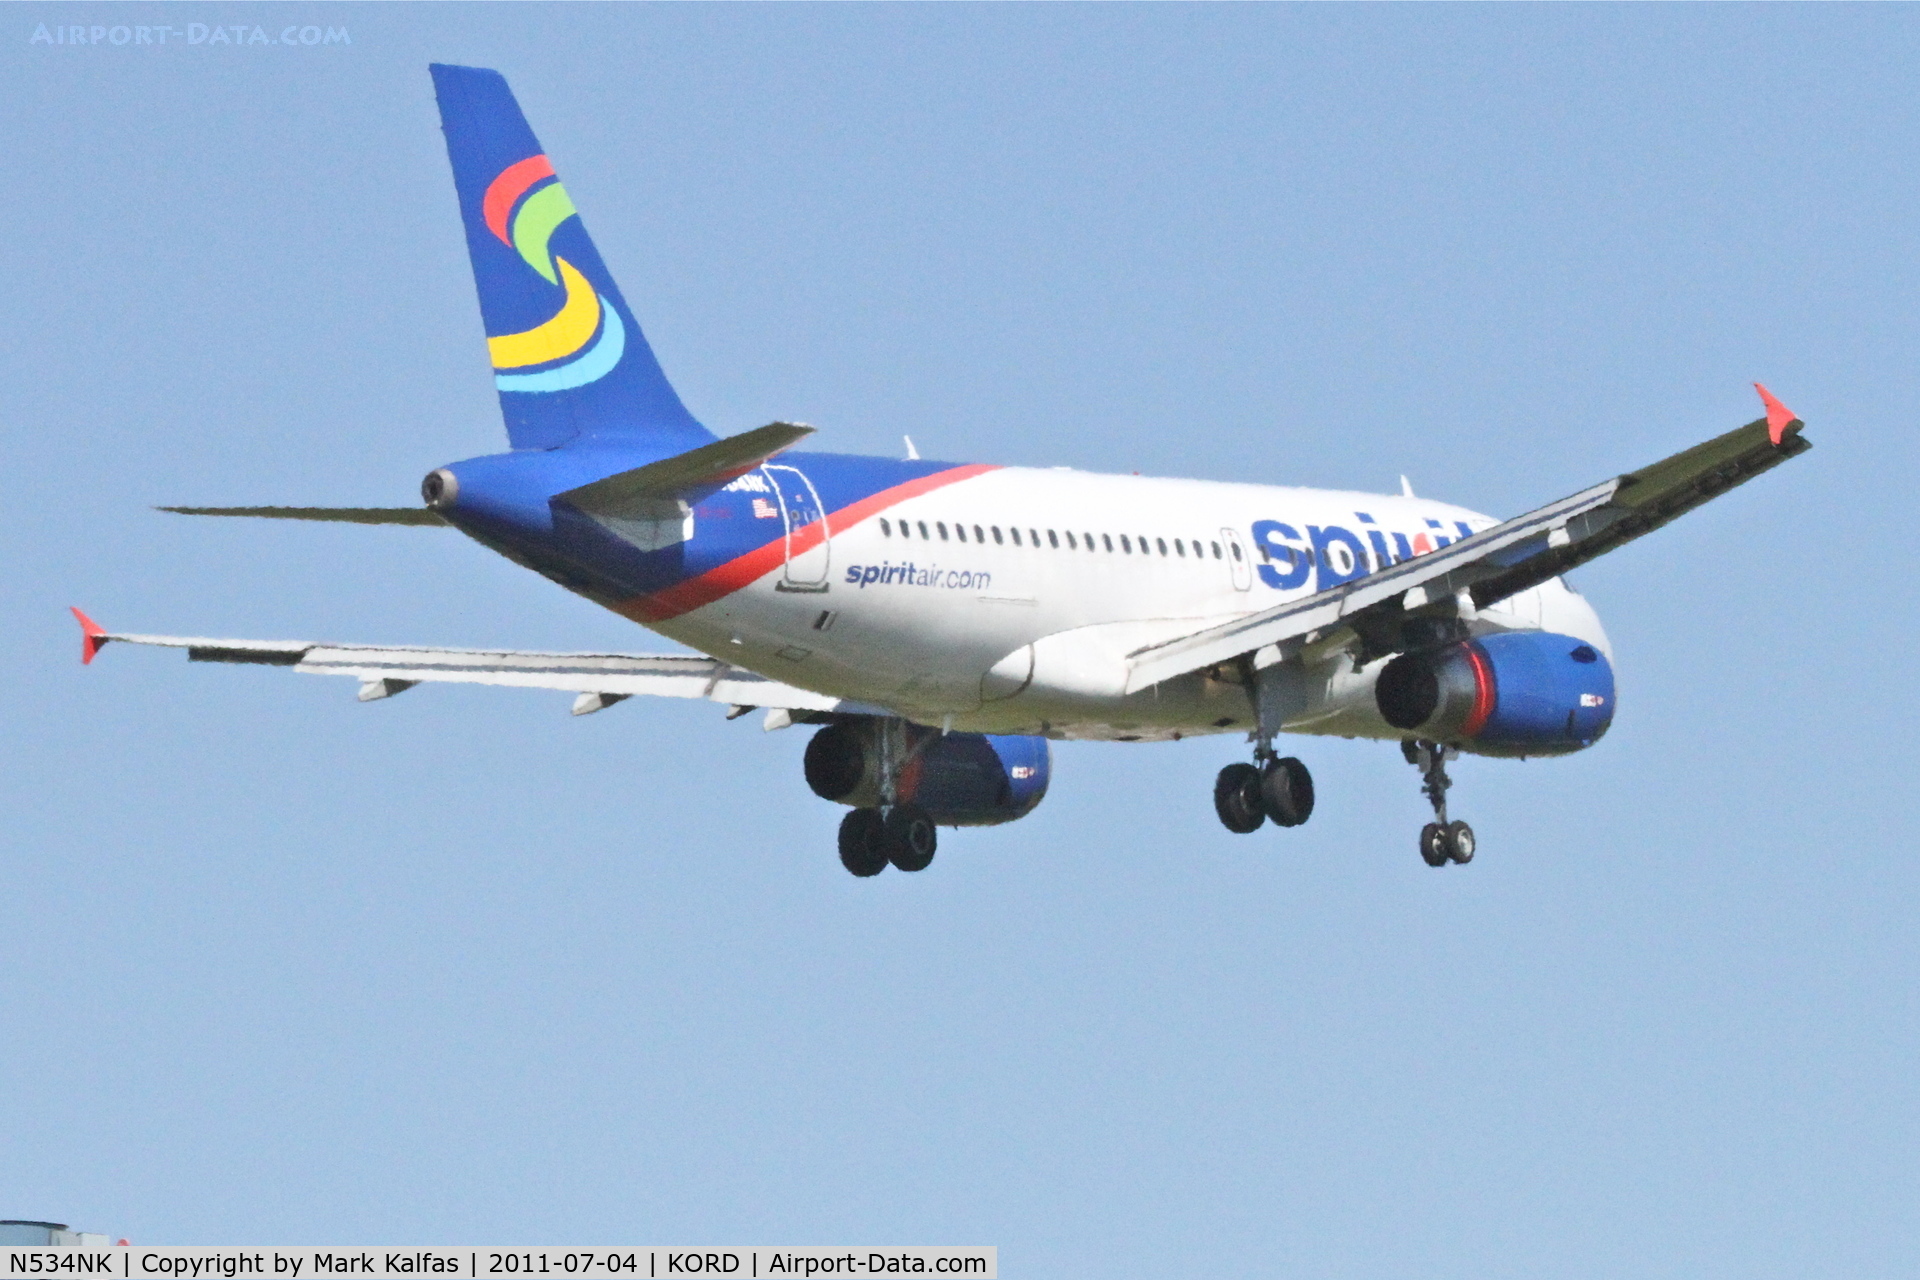 N534NK, 2008 Airbus A319-132 C/N 3395, Spirit Airlines Airbus A319-132, NKS156 arriving from KLAS, RWY 14R approach KORD.